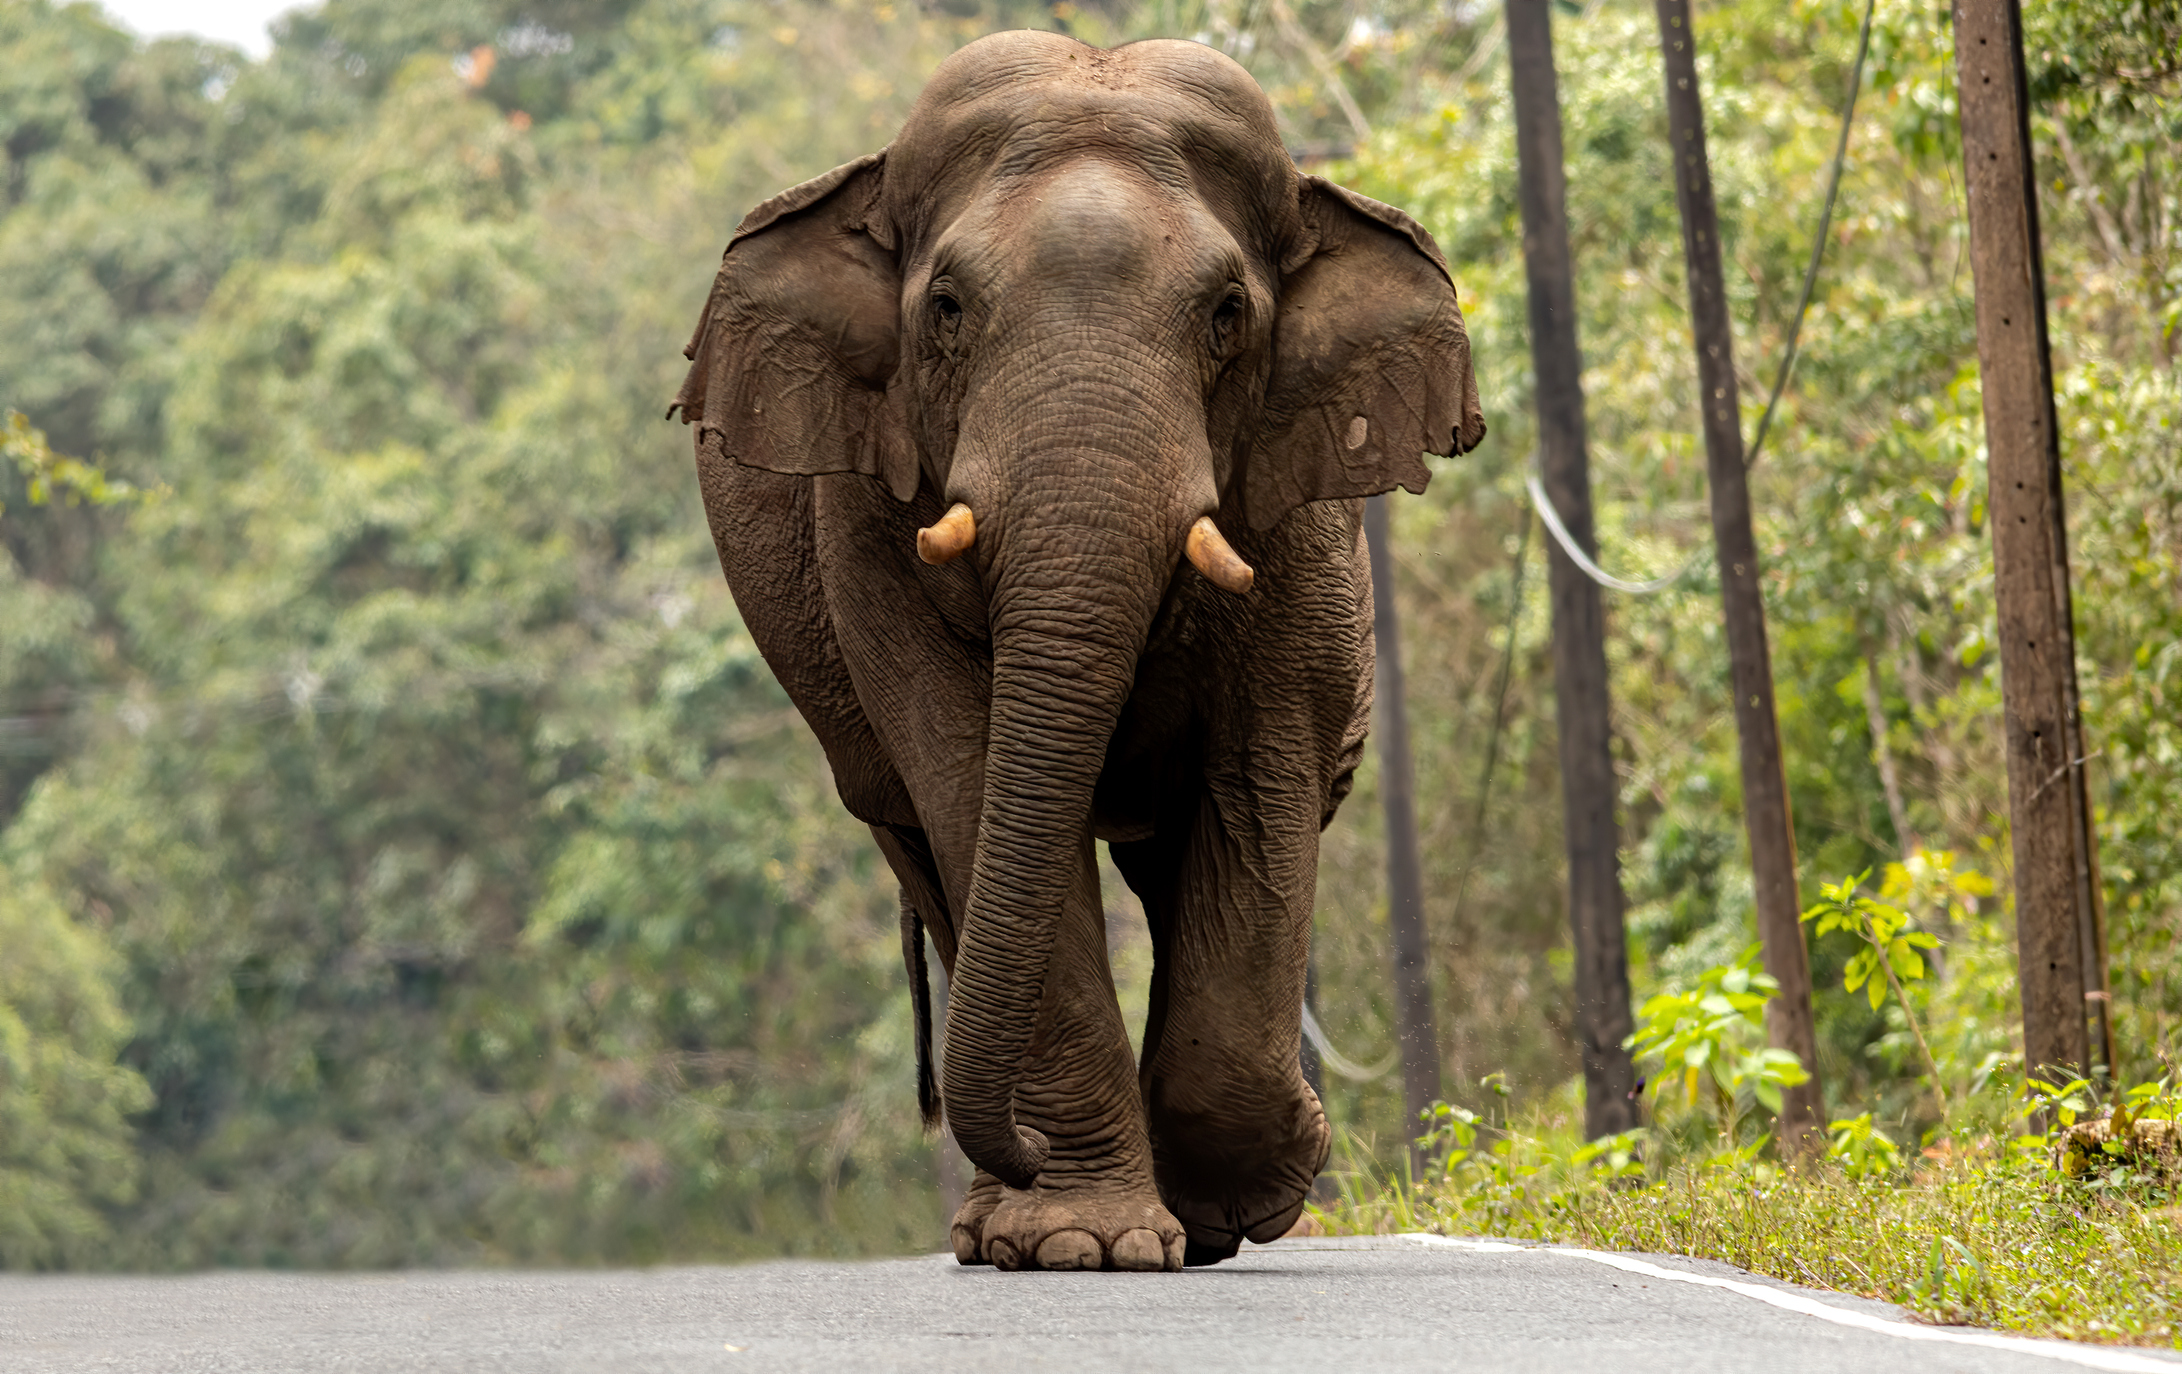 Профиль большого азиатского слона, идущего по дороге, на заднем плане — деревья.